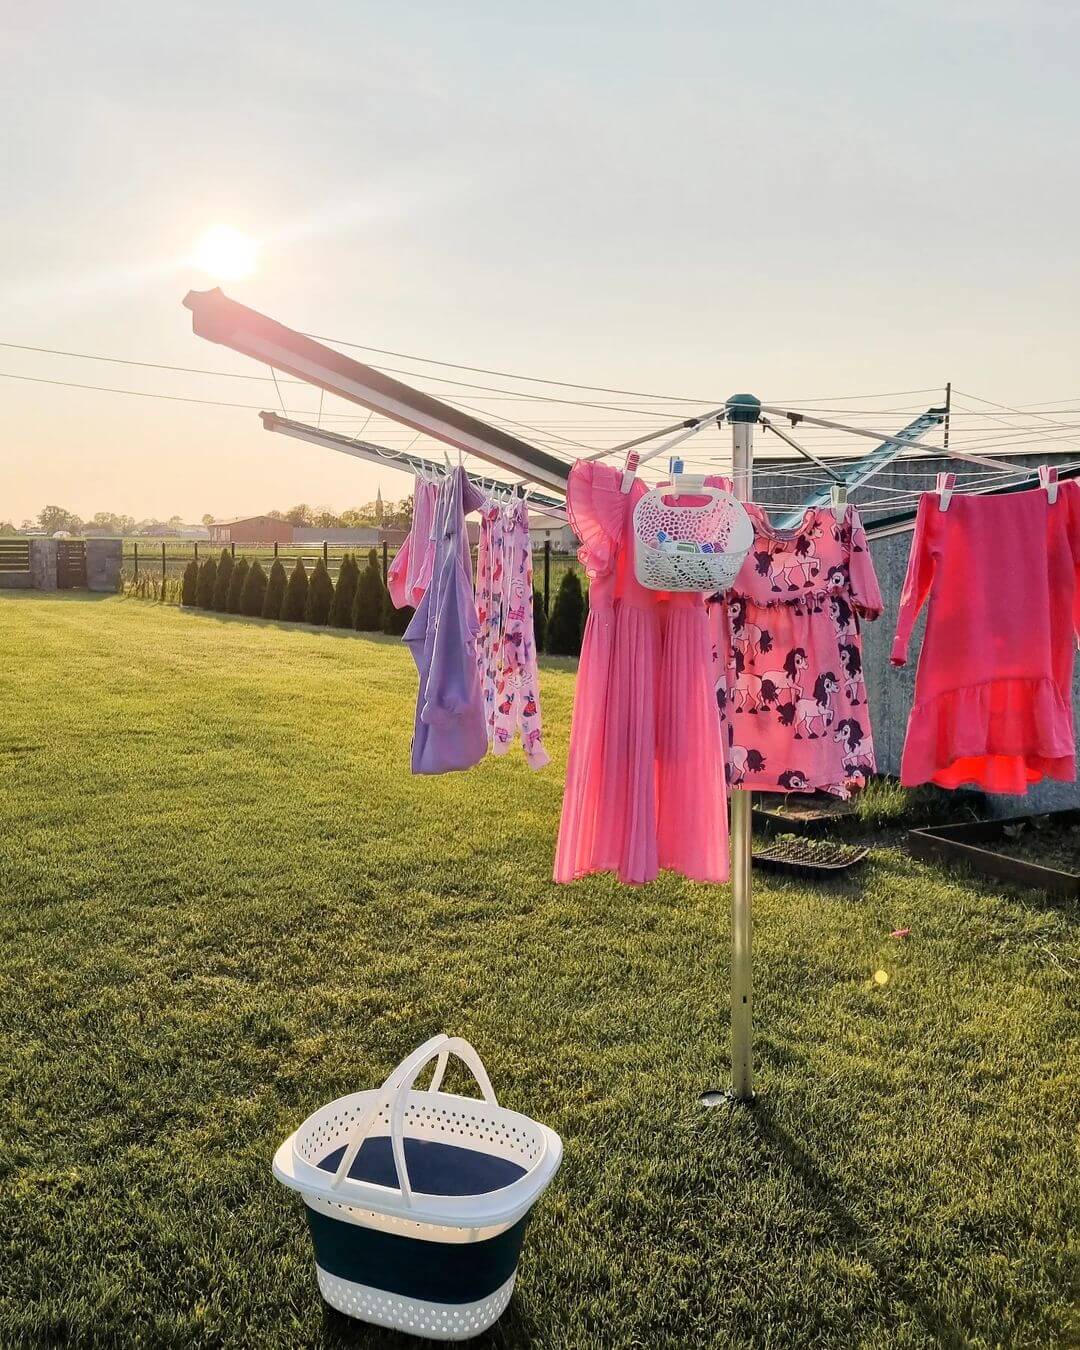 Case study LEIFHEIT influencer marketing zdjęcie przedstawia wiszące na suszarce różowe pranie w zielonym ogrodzie